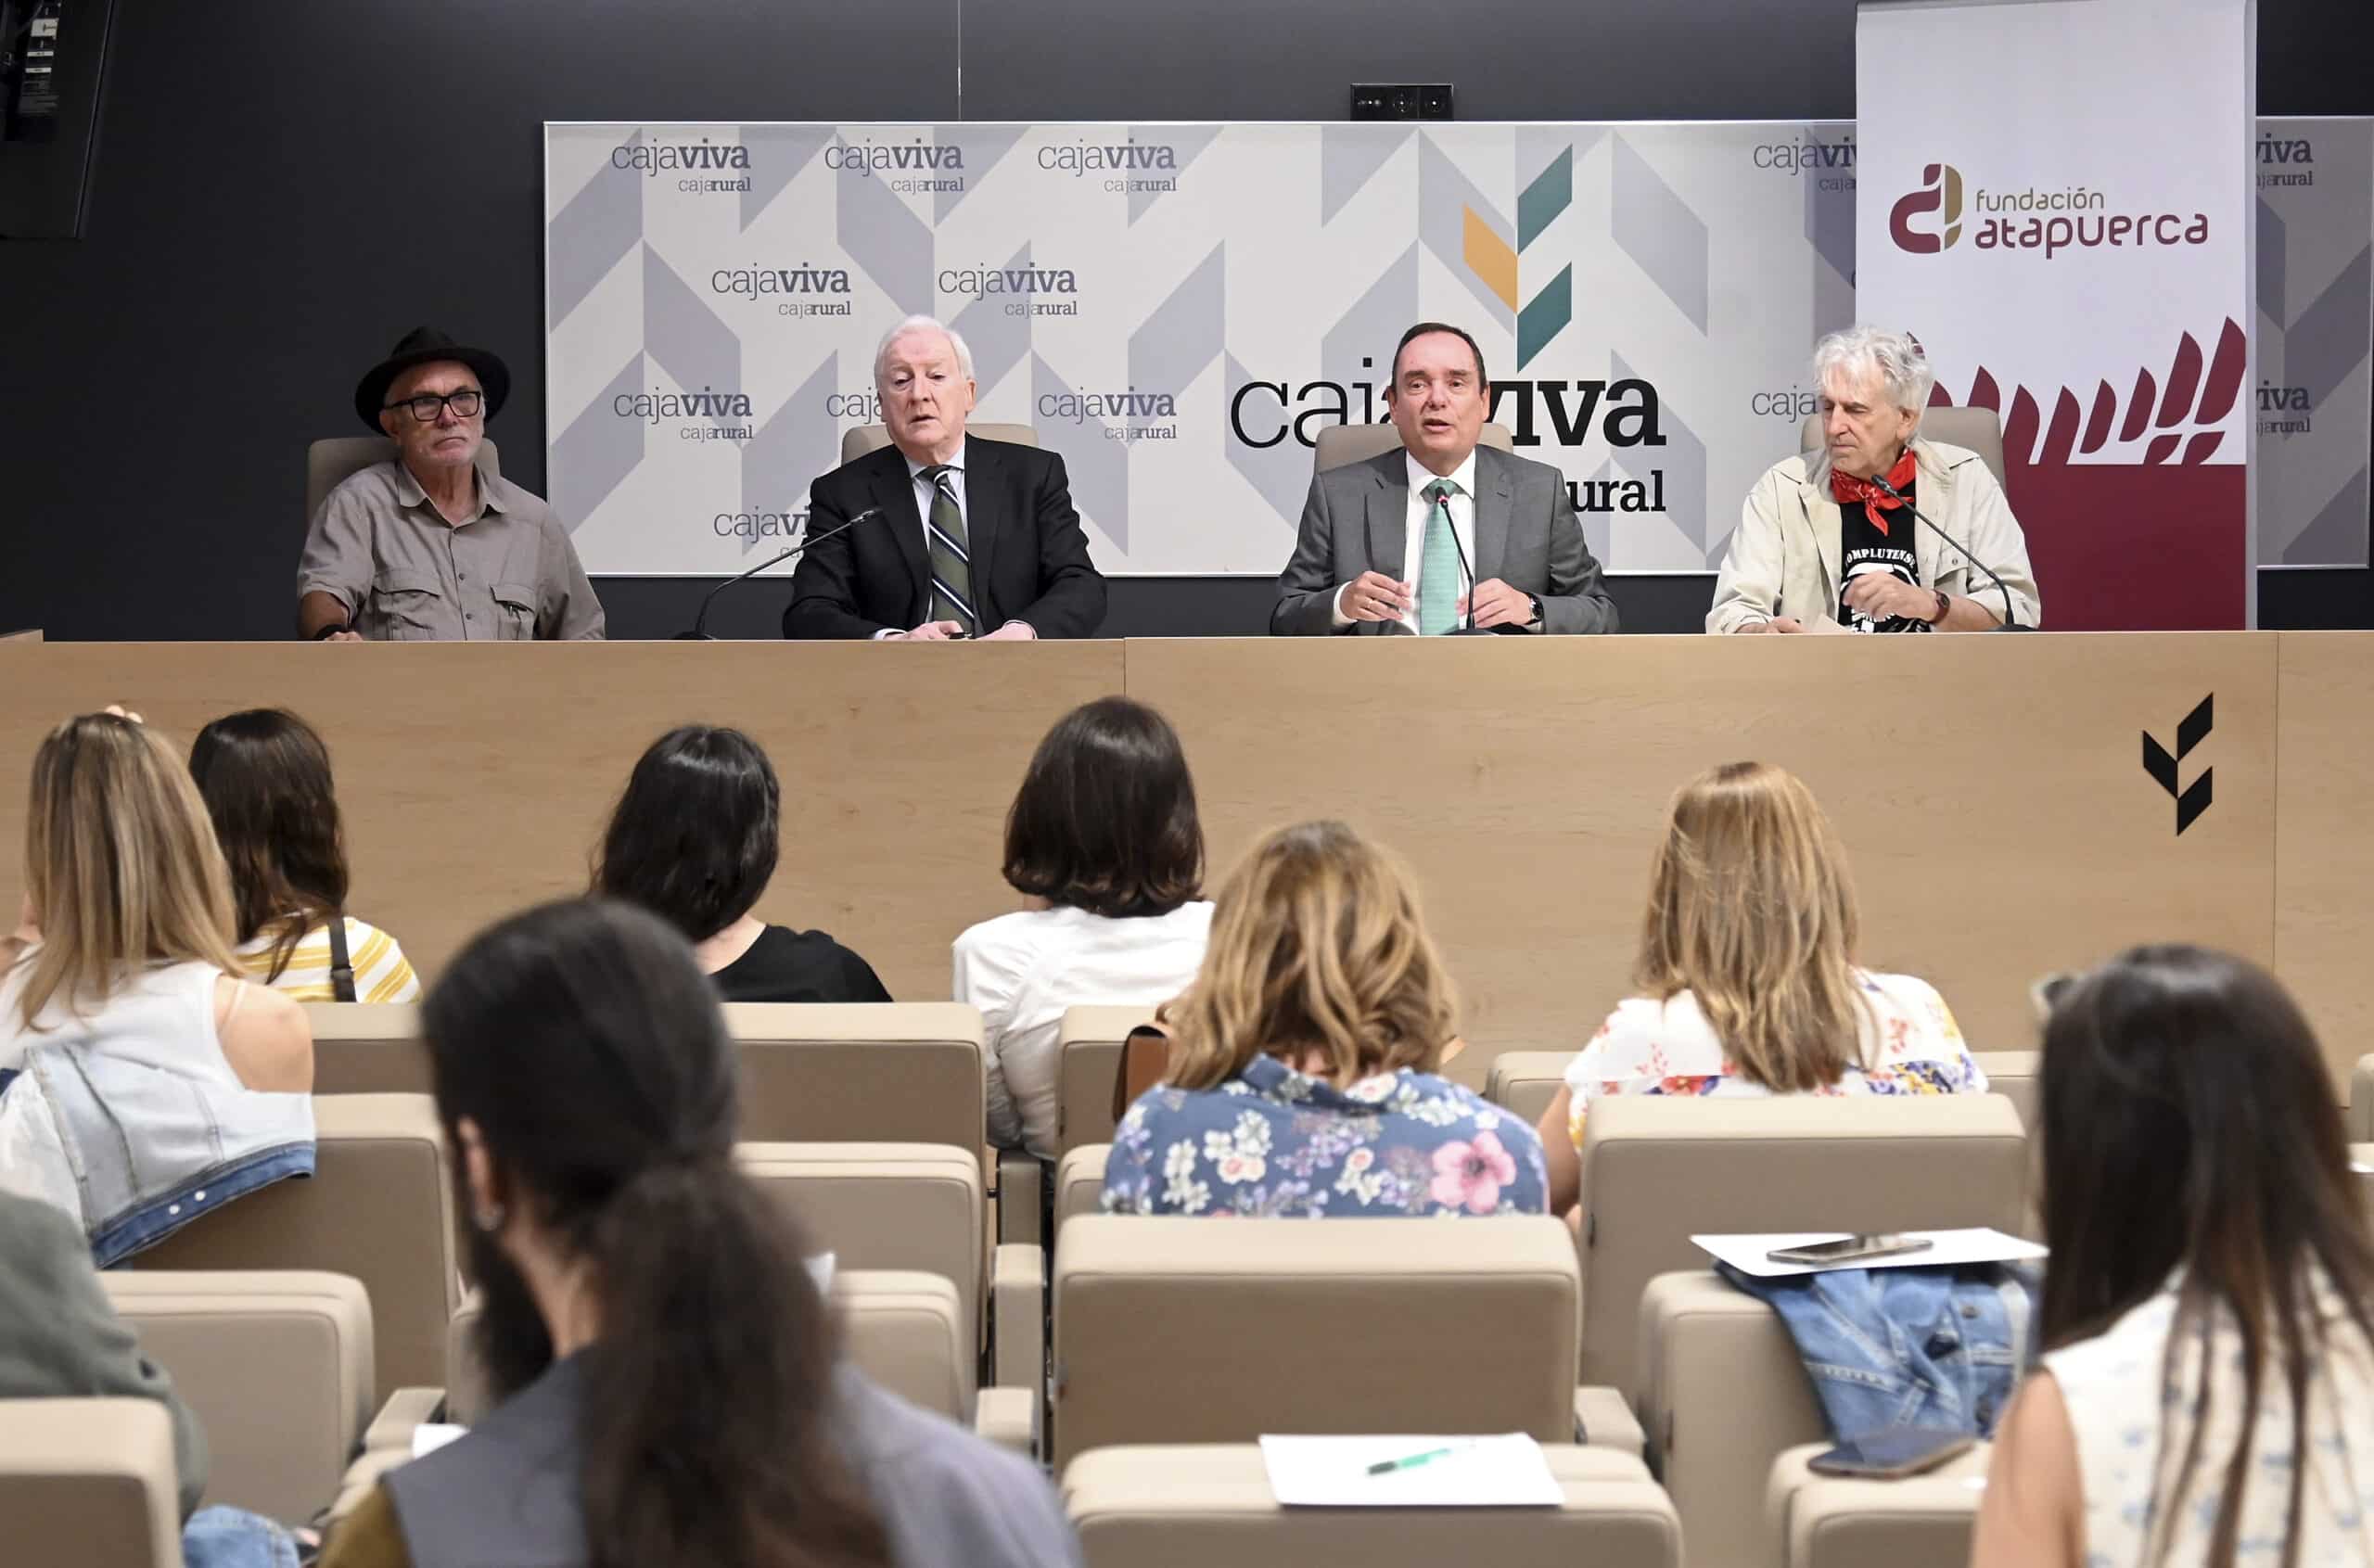 Cajaviva y Fundación Caja Rural renuevan su apoyo de 44.000 euros a Fundación Atapuerca